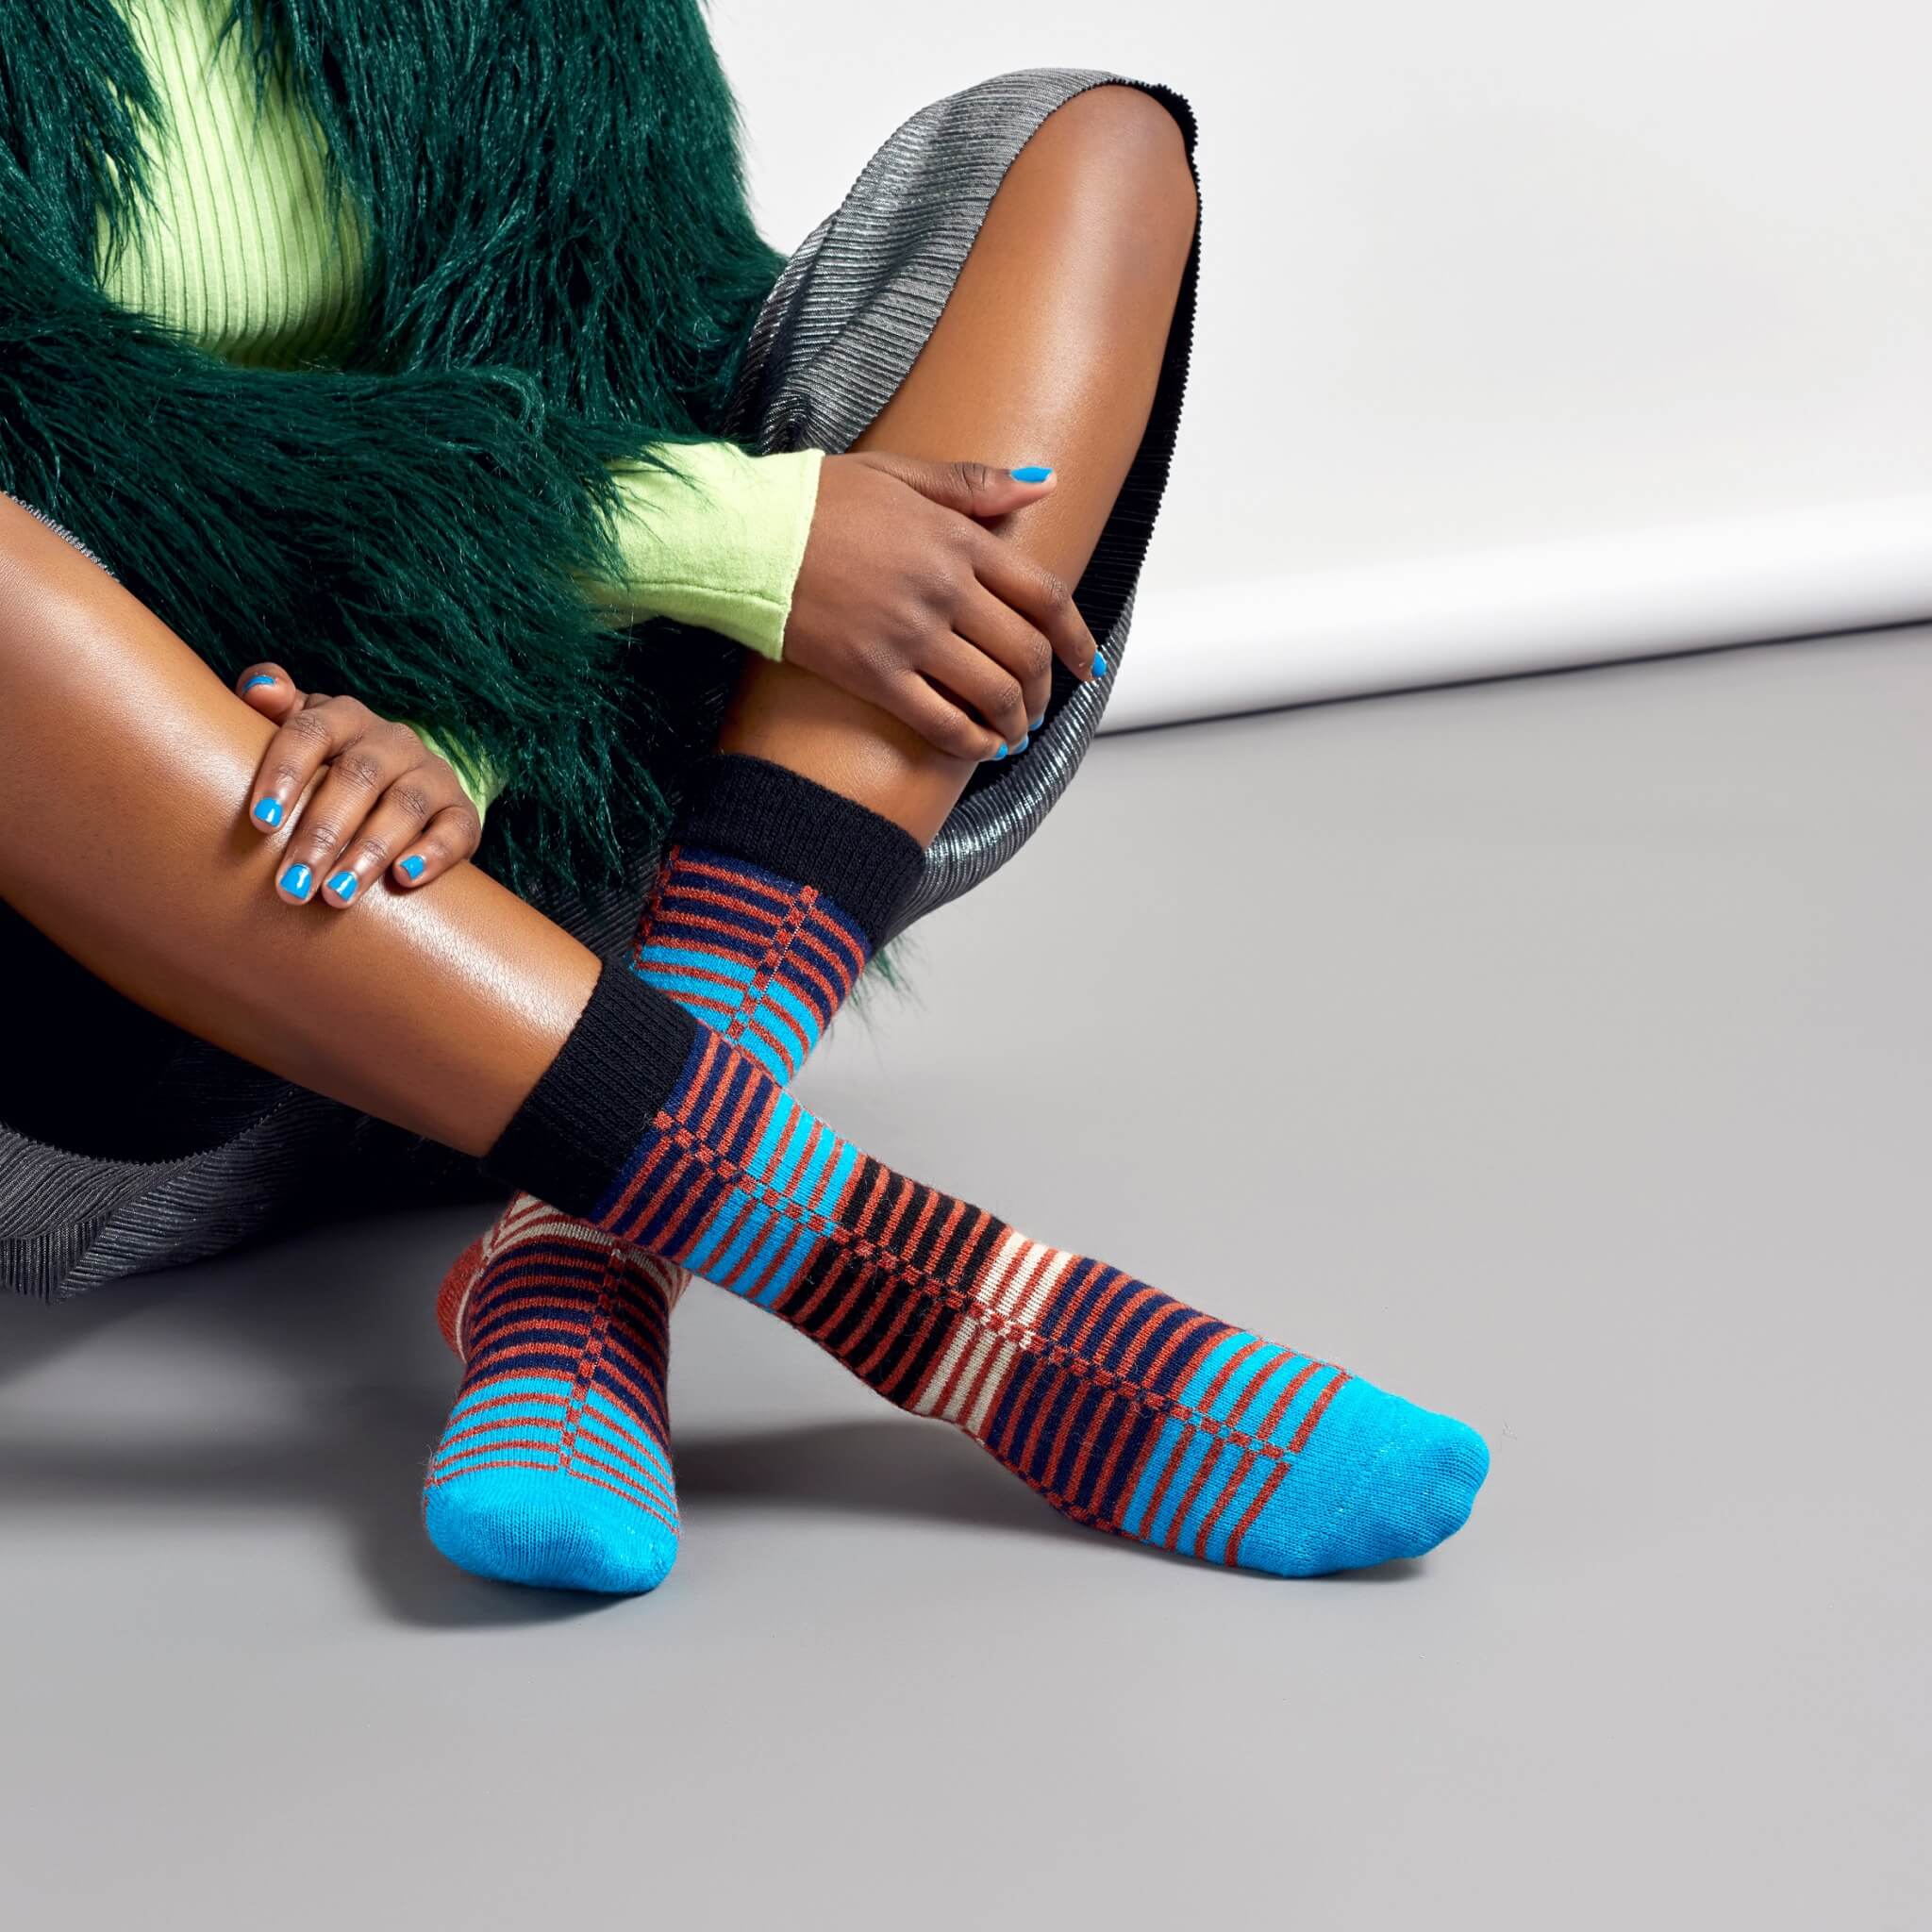 Dámské barevné (modré) ponožky Happy Socks Ellinor // kolekce Hysteria